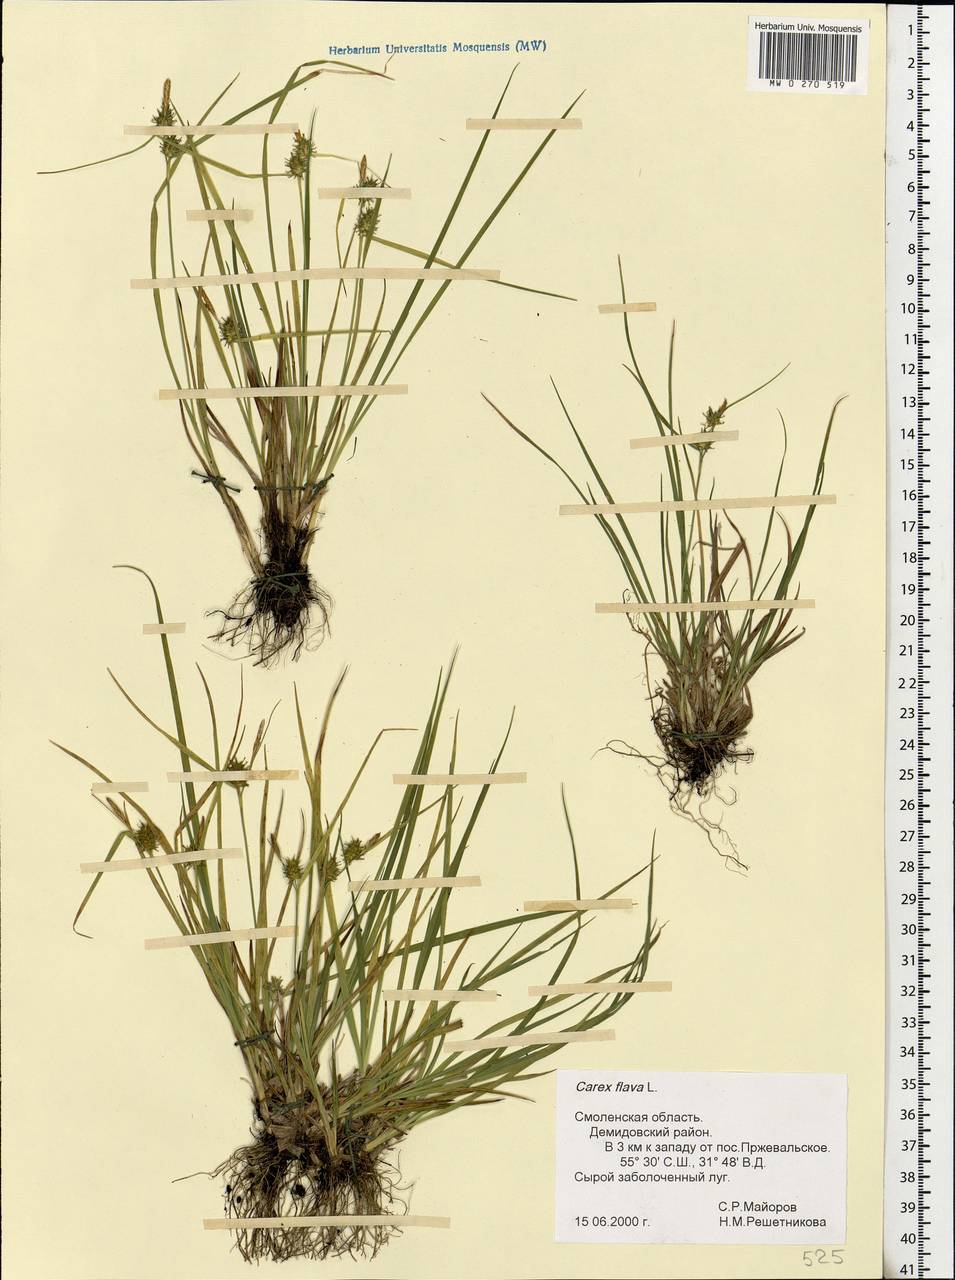 Carex flava L., Eastern Europe, Western region (E3) (Russia)